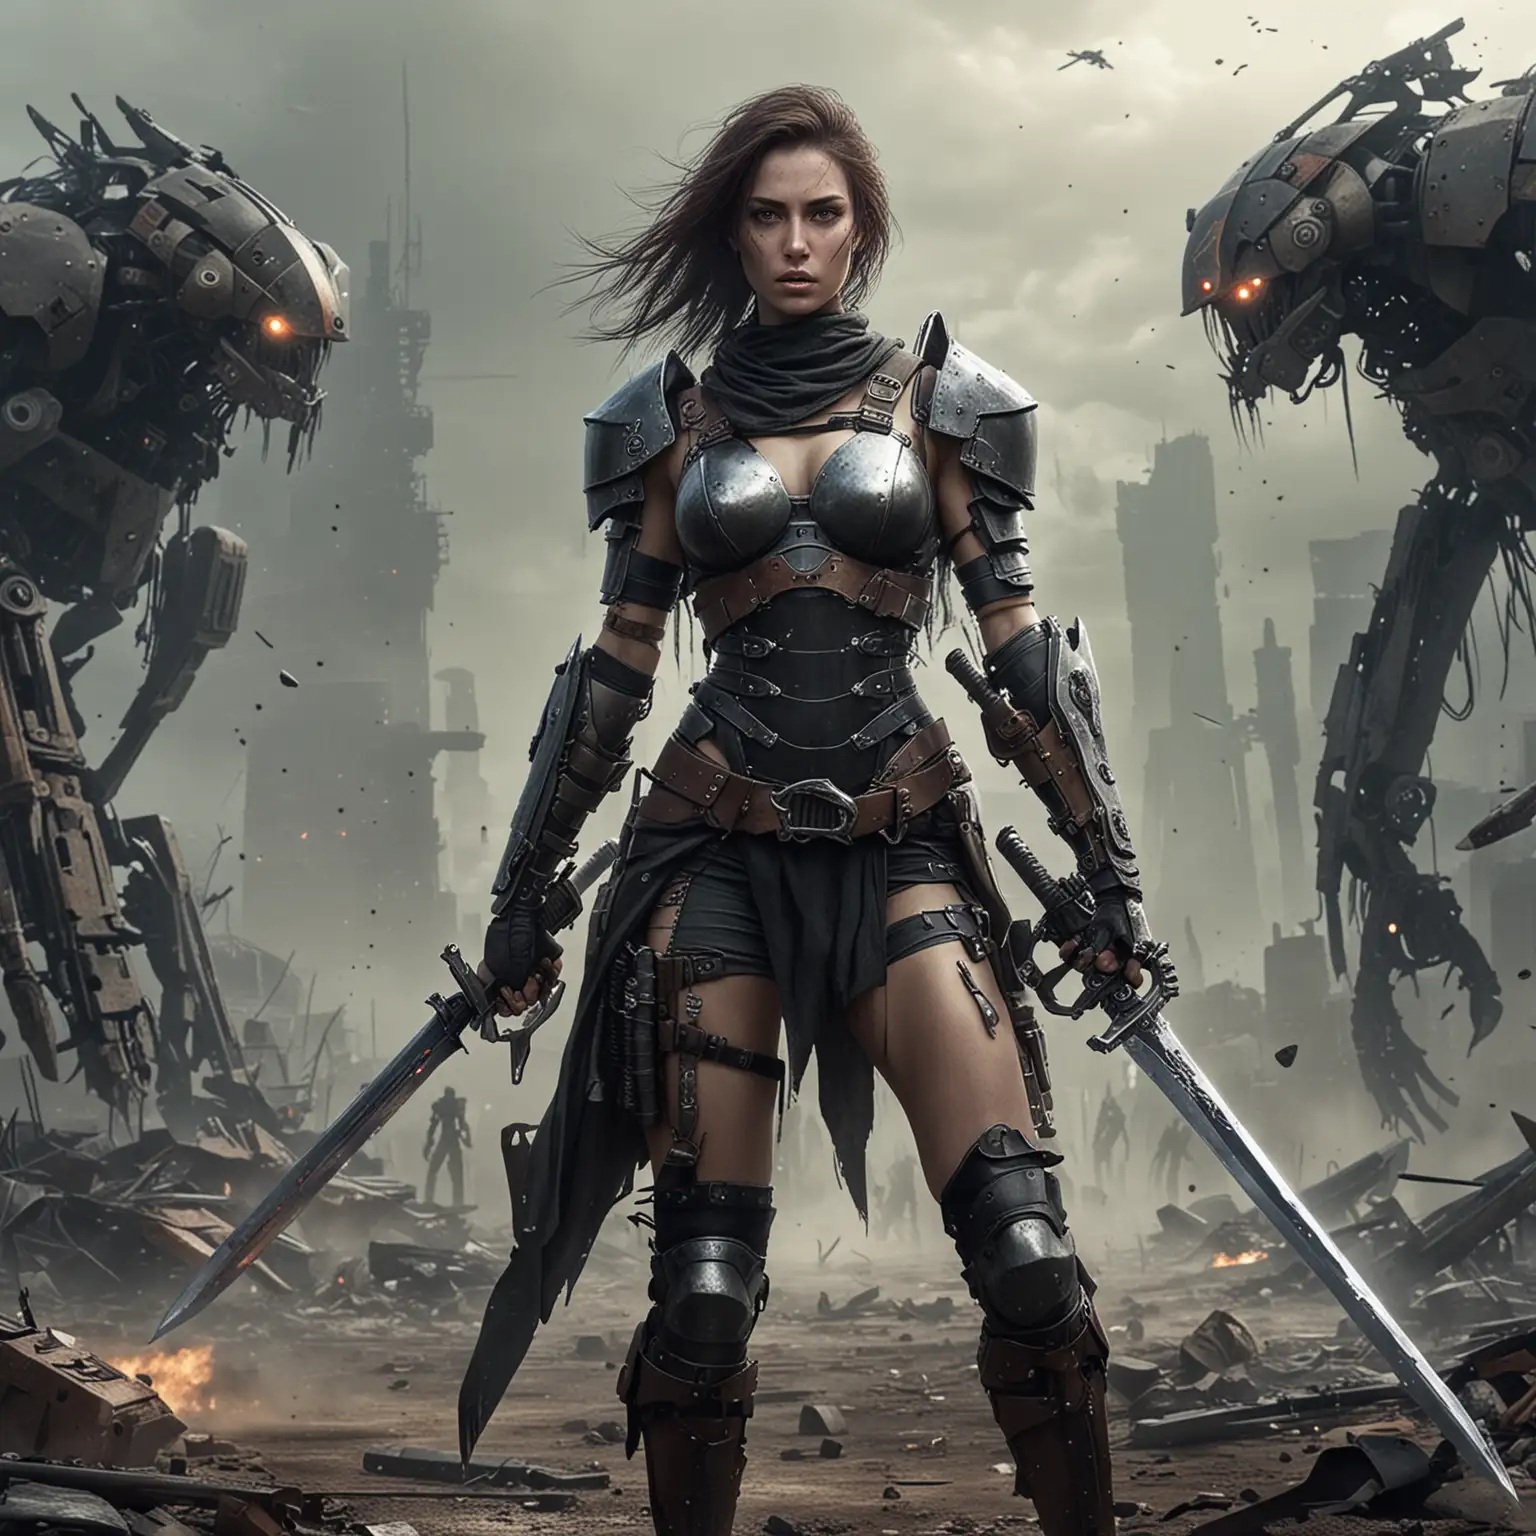 #post apocalypse #battle #swords #robots #woman